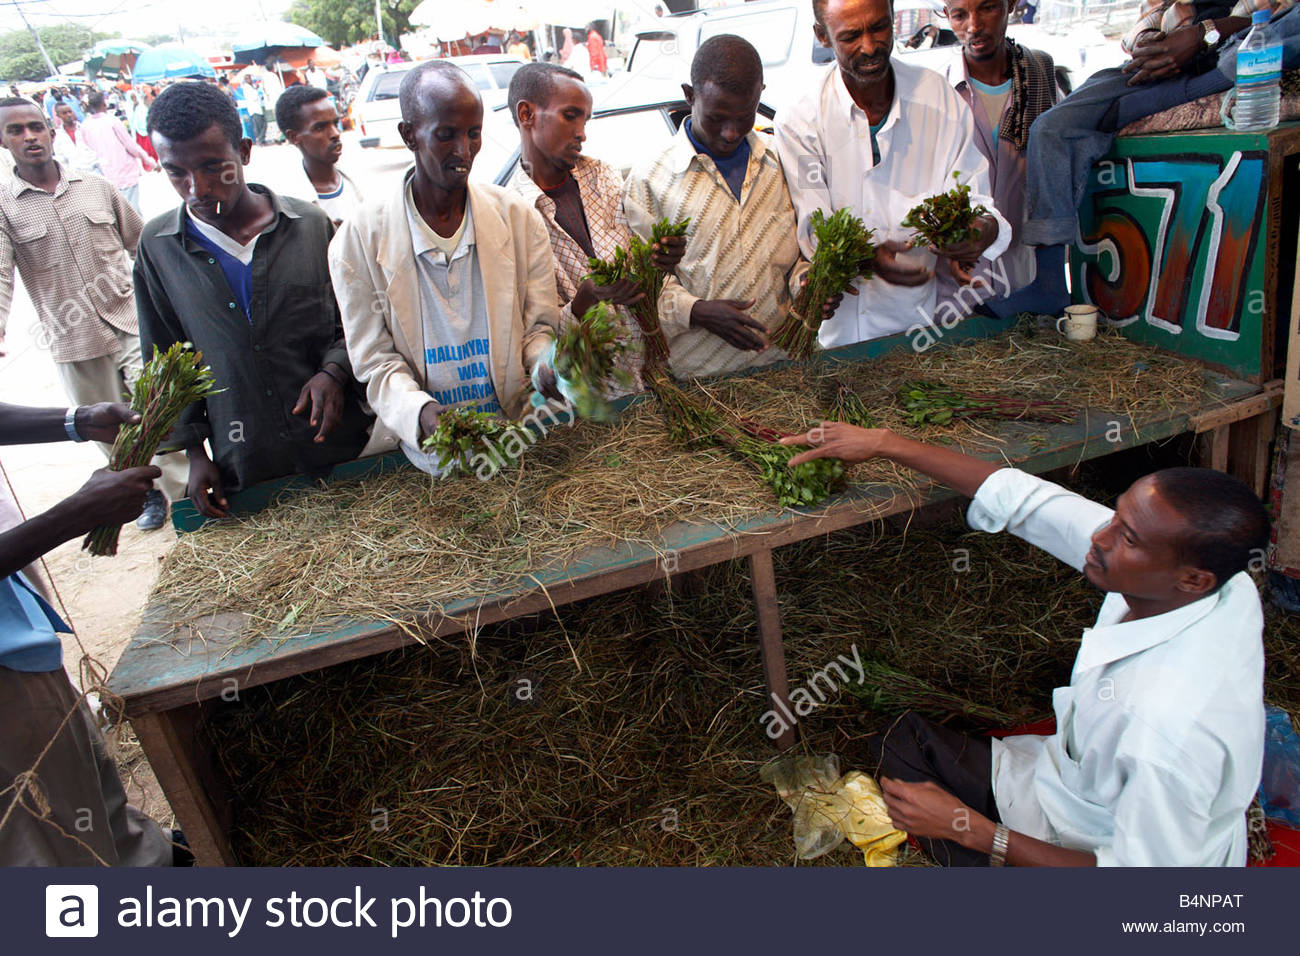 men-buy-khat-from-a-stall-in-hargeisa-somalia-B4NPAT.jpg